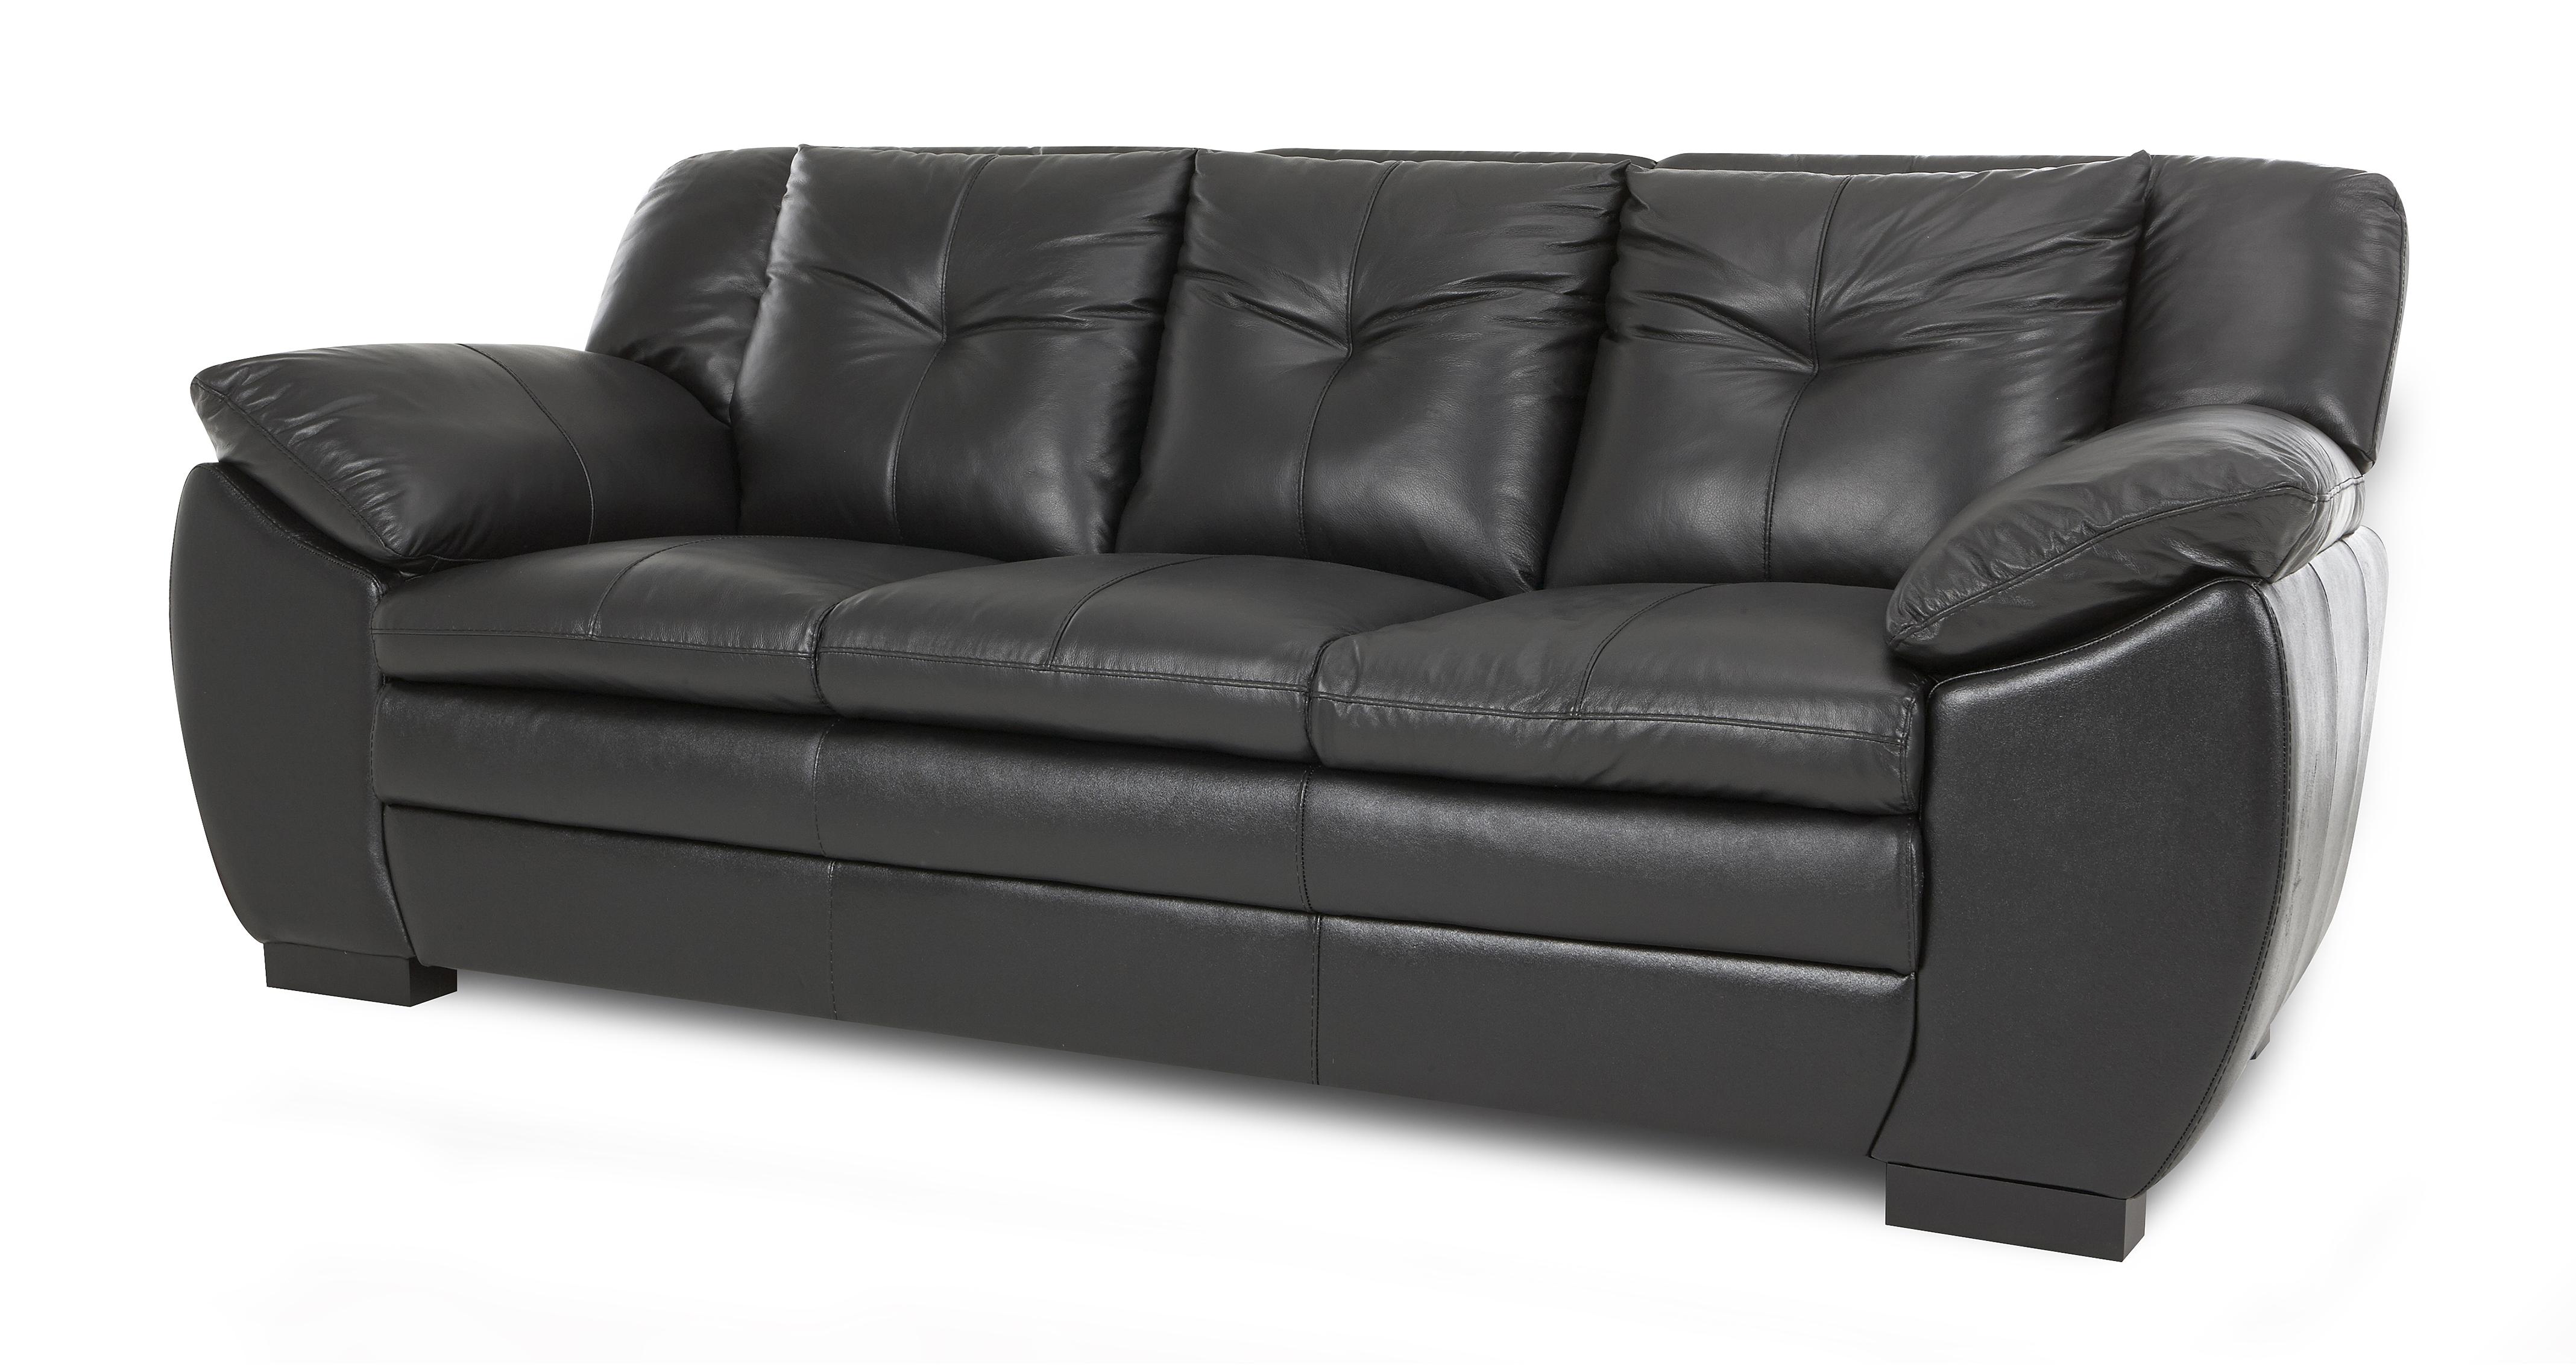 dfs leather sofa repair kit